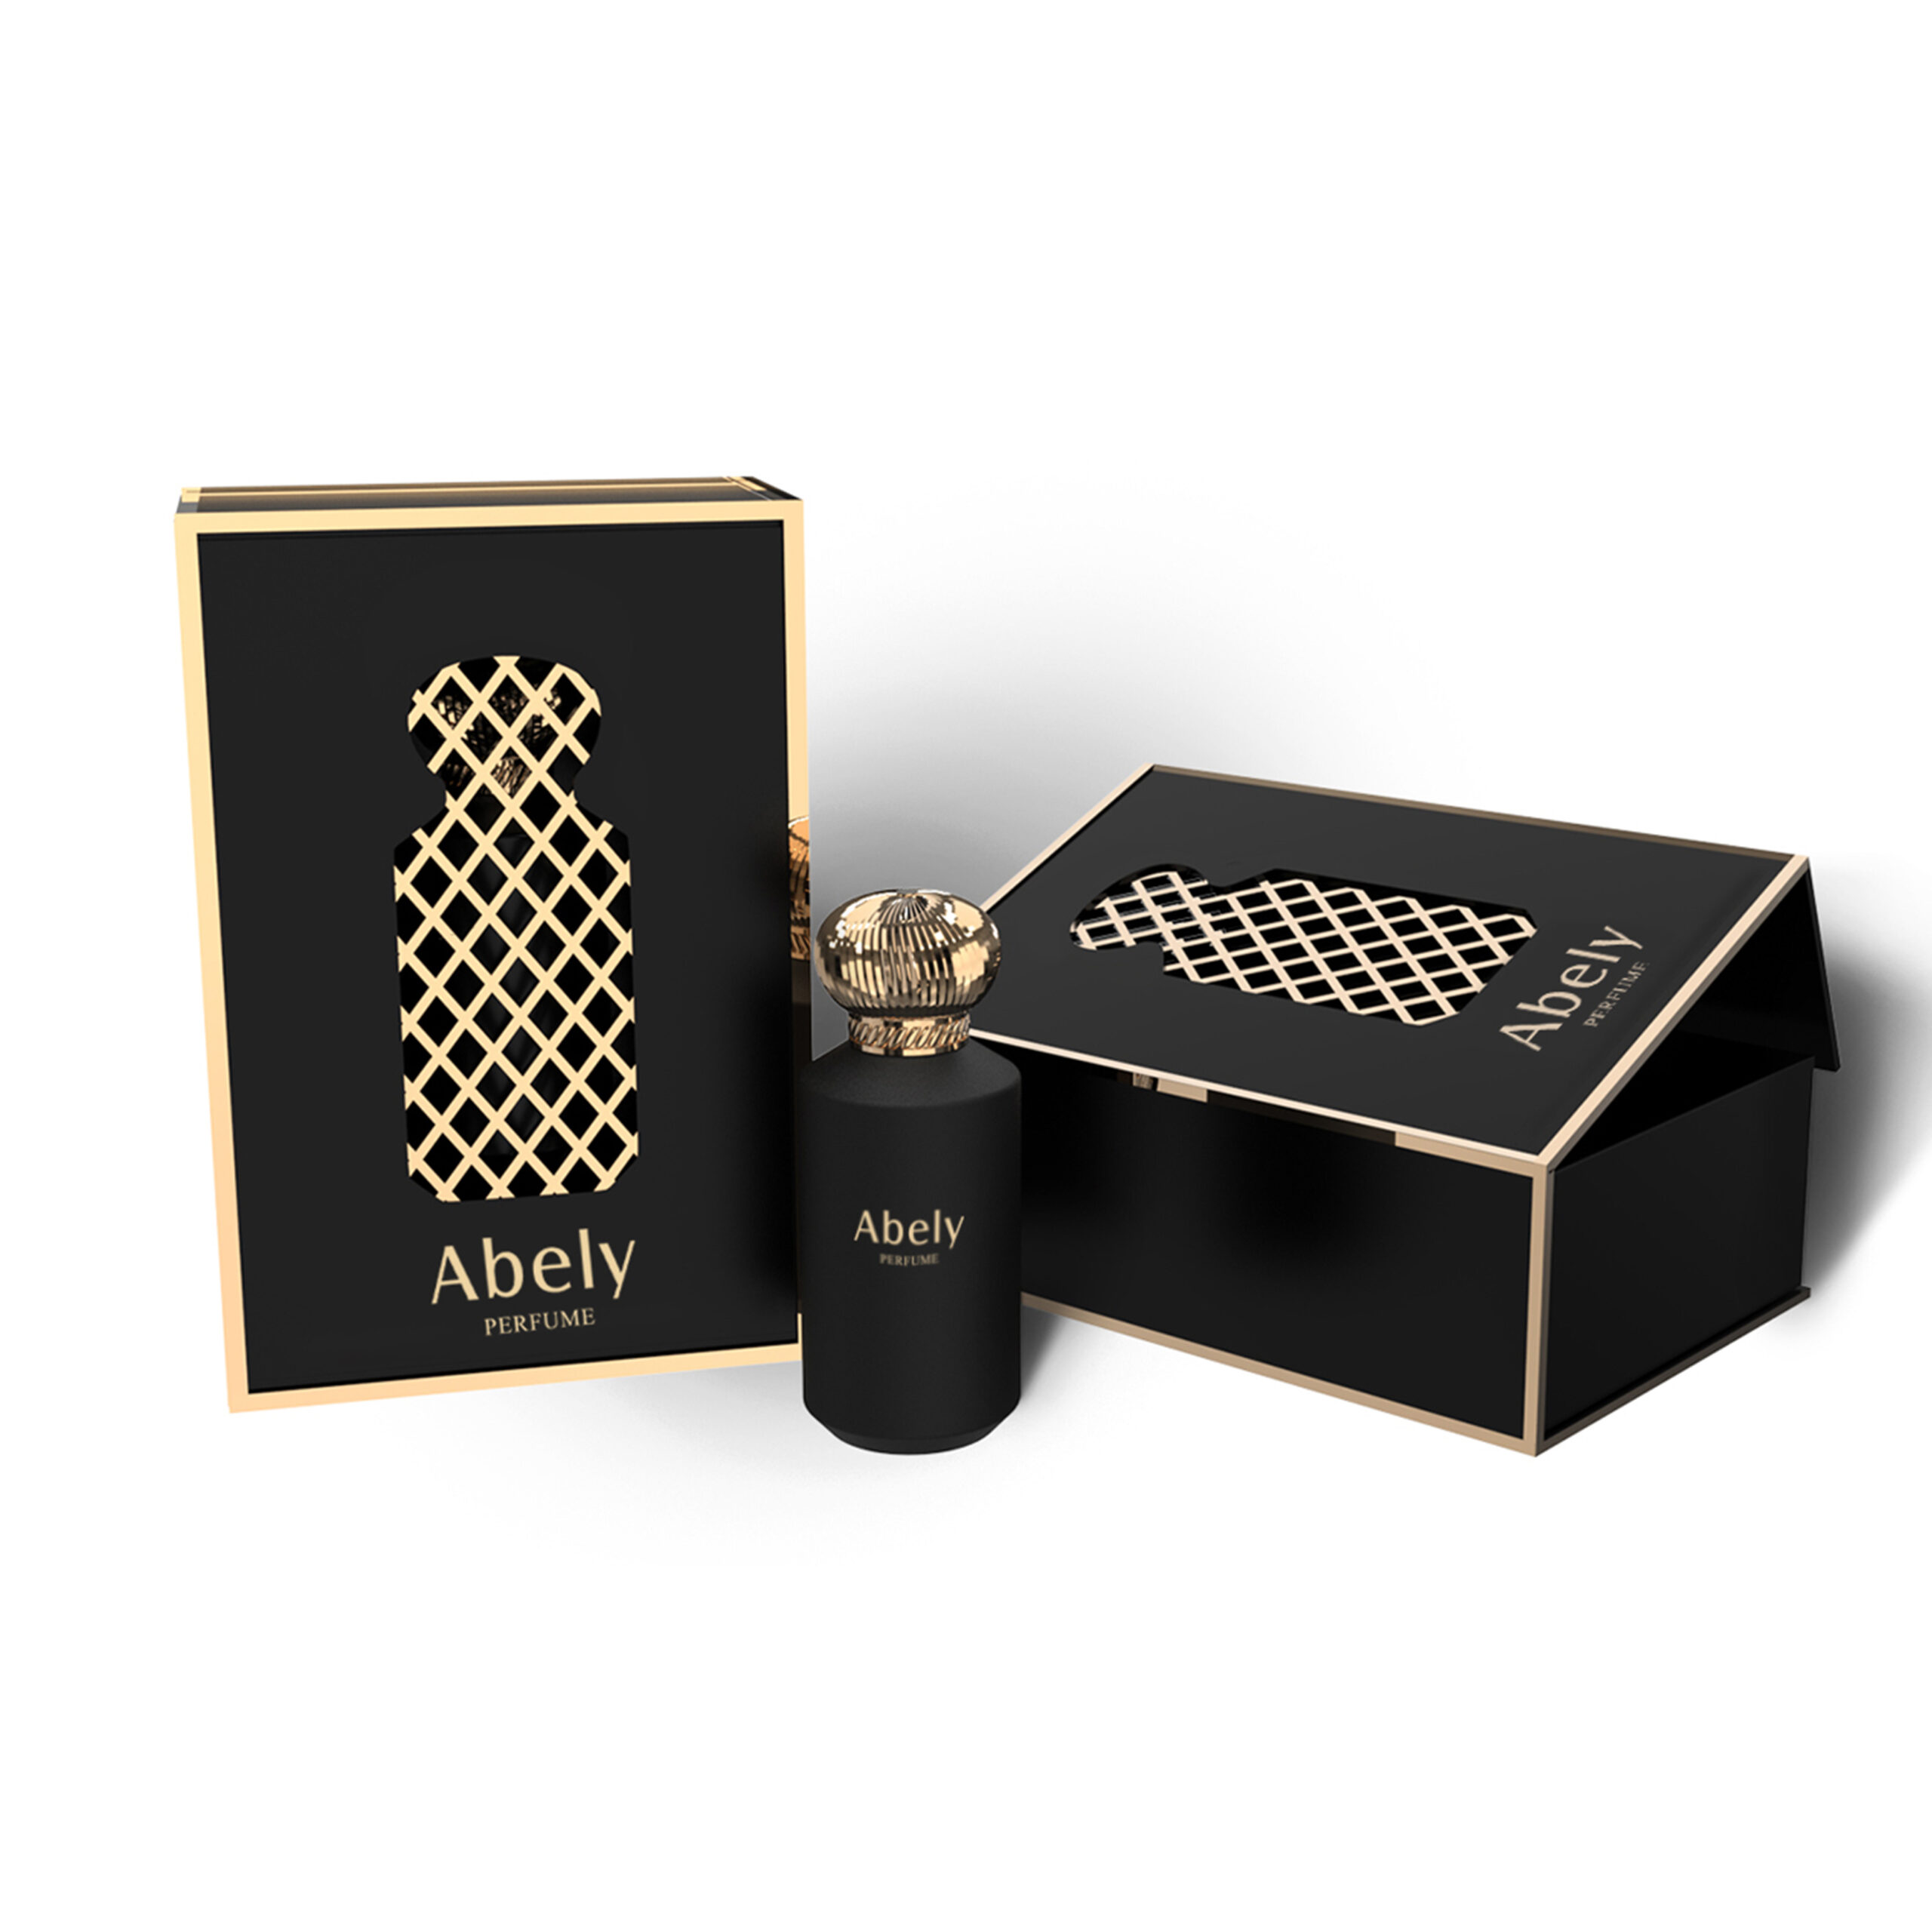 Custom Packaging&Perfume Bottle Box-Abely Perfume Packaging 